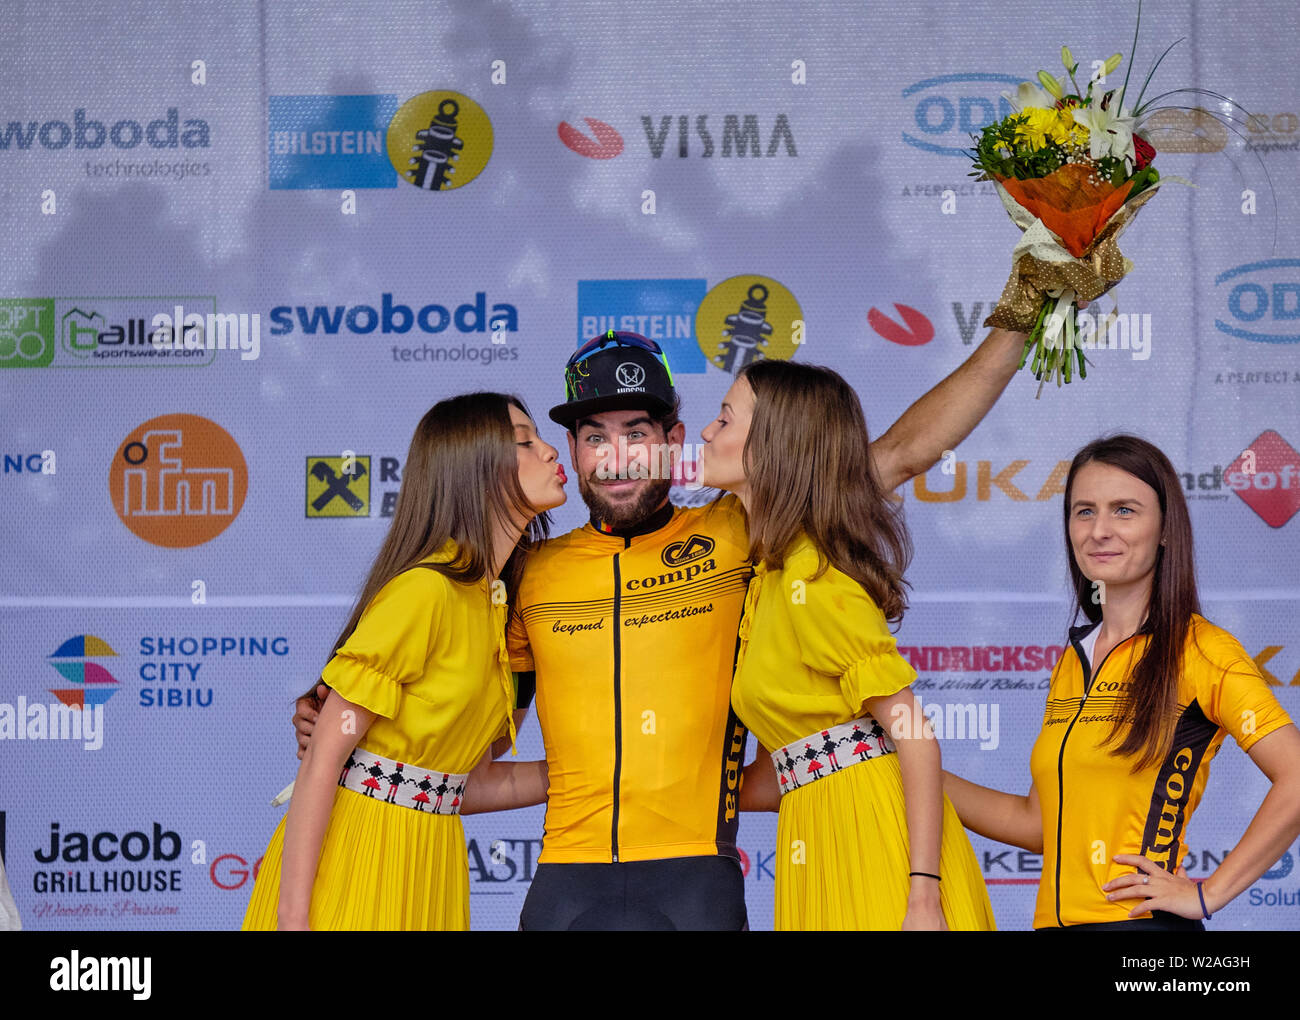 Preisverleihung der Radfahrer Riccardo Stacchiotti (Team Giotti Victoria-Palomar) Sieger der 4. Phase der Radtour Sibiu, Rumänien, Juli 7,2019 Stockfoto